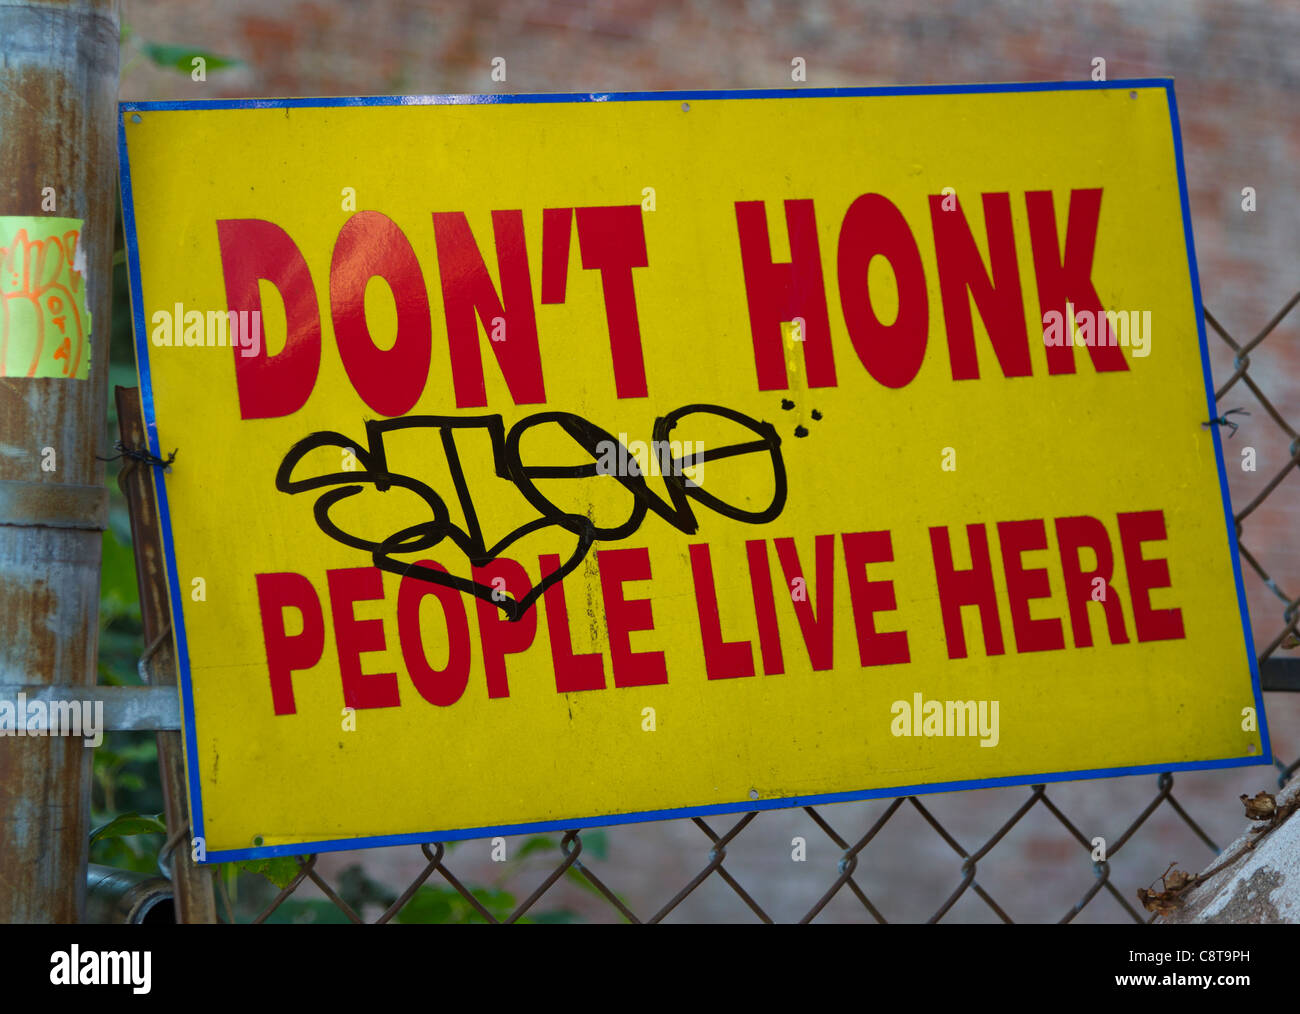 N'honk votre corne signe devant une clôture Banque D'Images